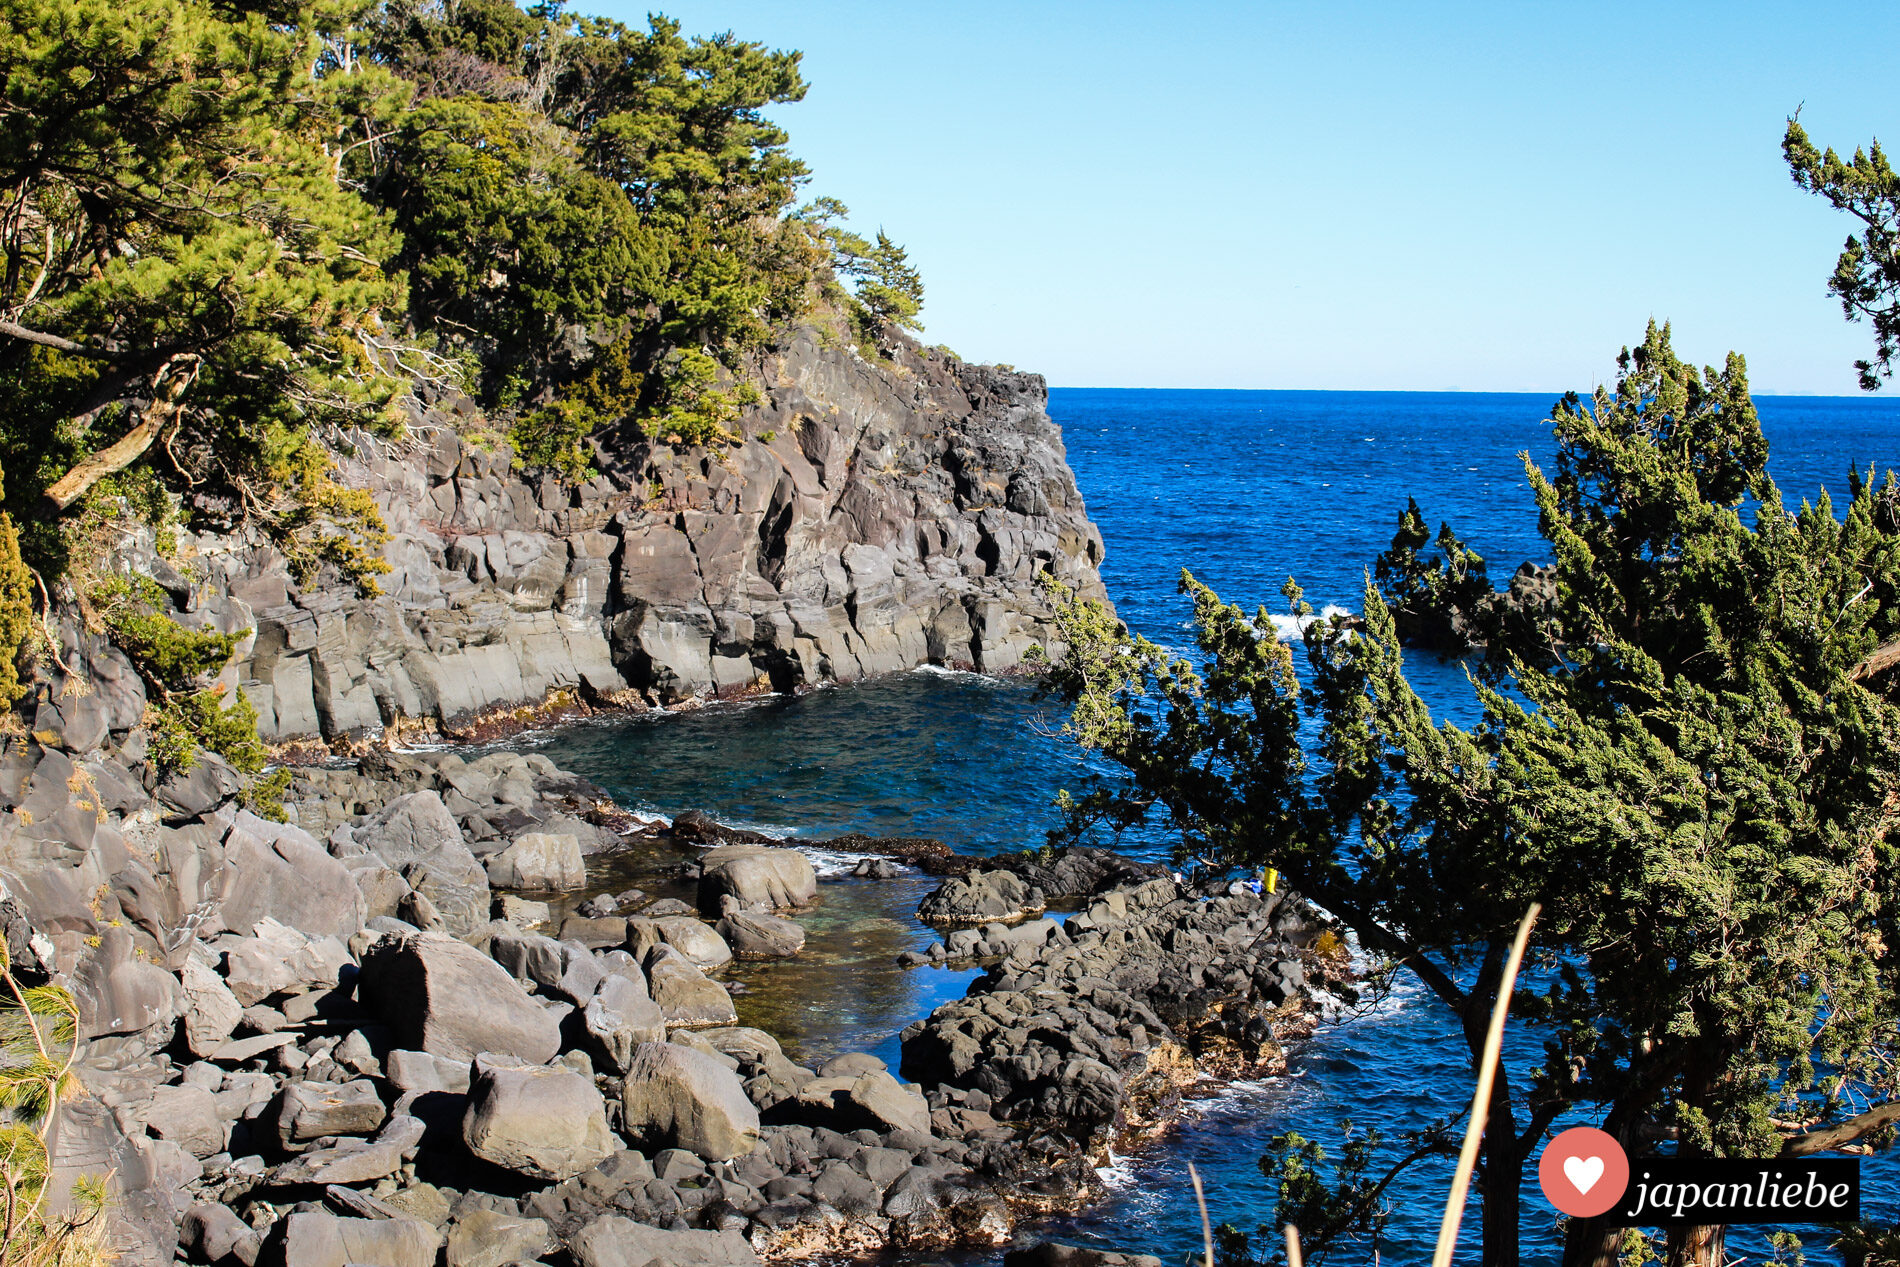 Geheimtipp für deine Japanreise: eine Wanderung entlang der Jogasaki-Küste auf der Izu-halbinsel.